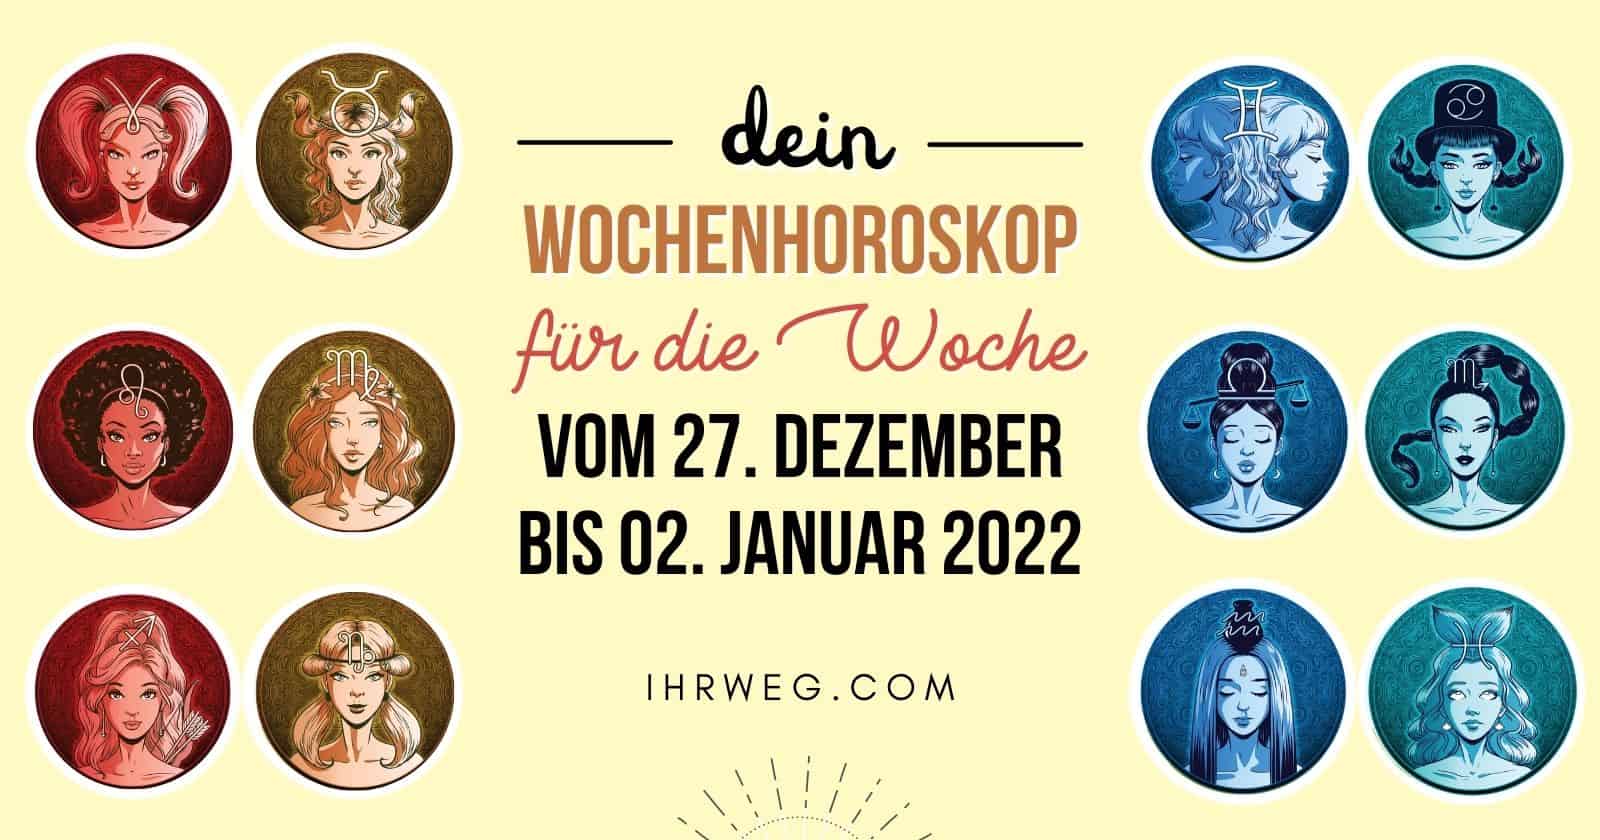 Dein Wochenhoroskop für die Woche vom 27. Dezember 2021 bis 02. Januar 2022